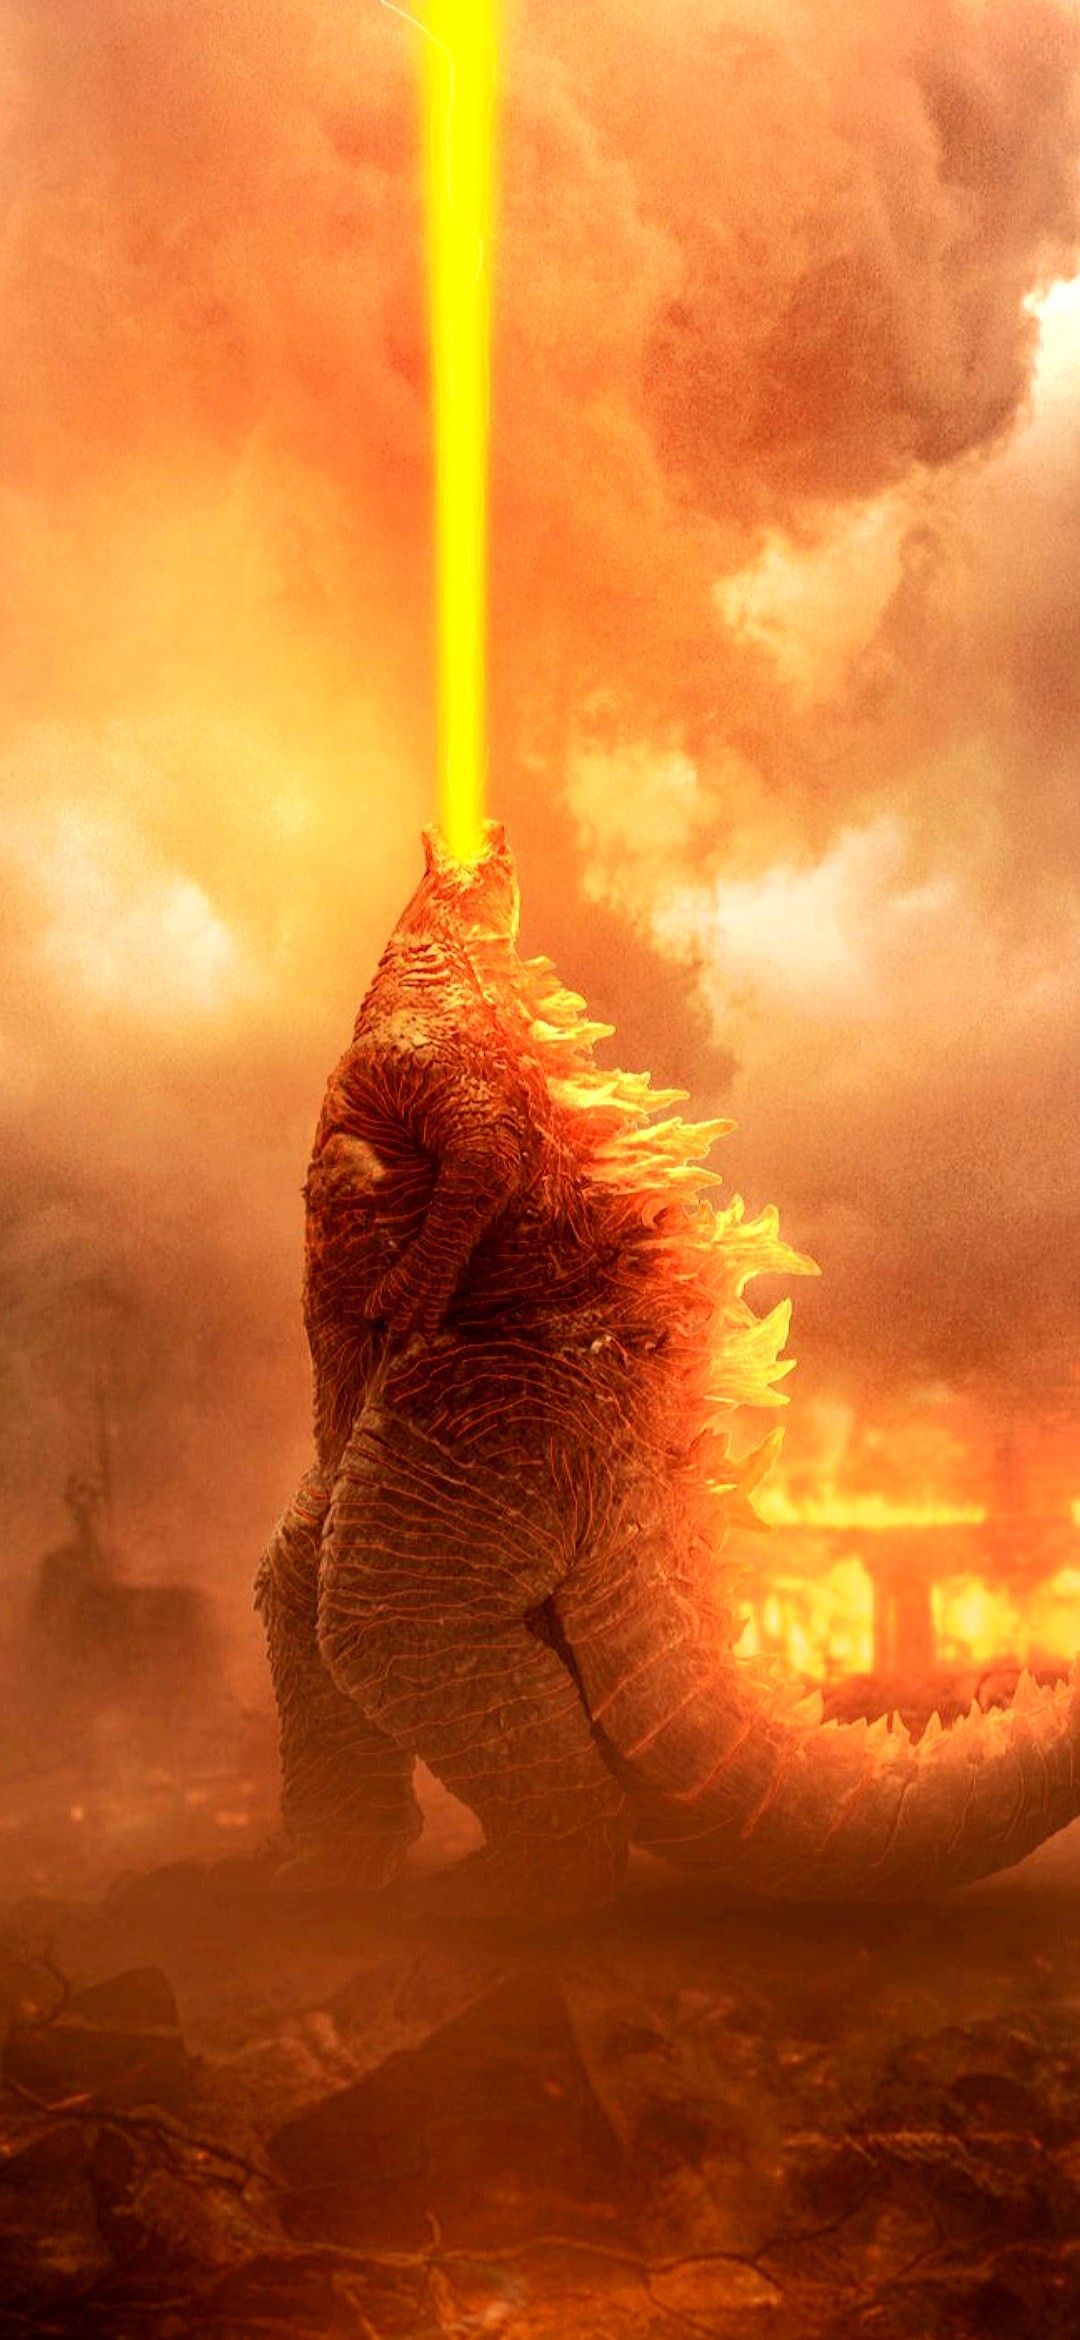 Hình nền điện thoại Godzilla full hd